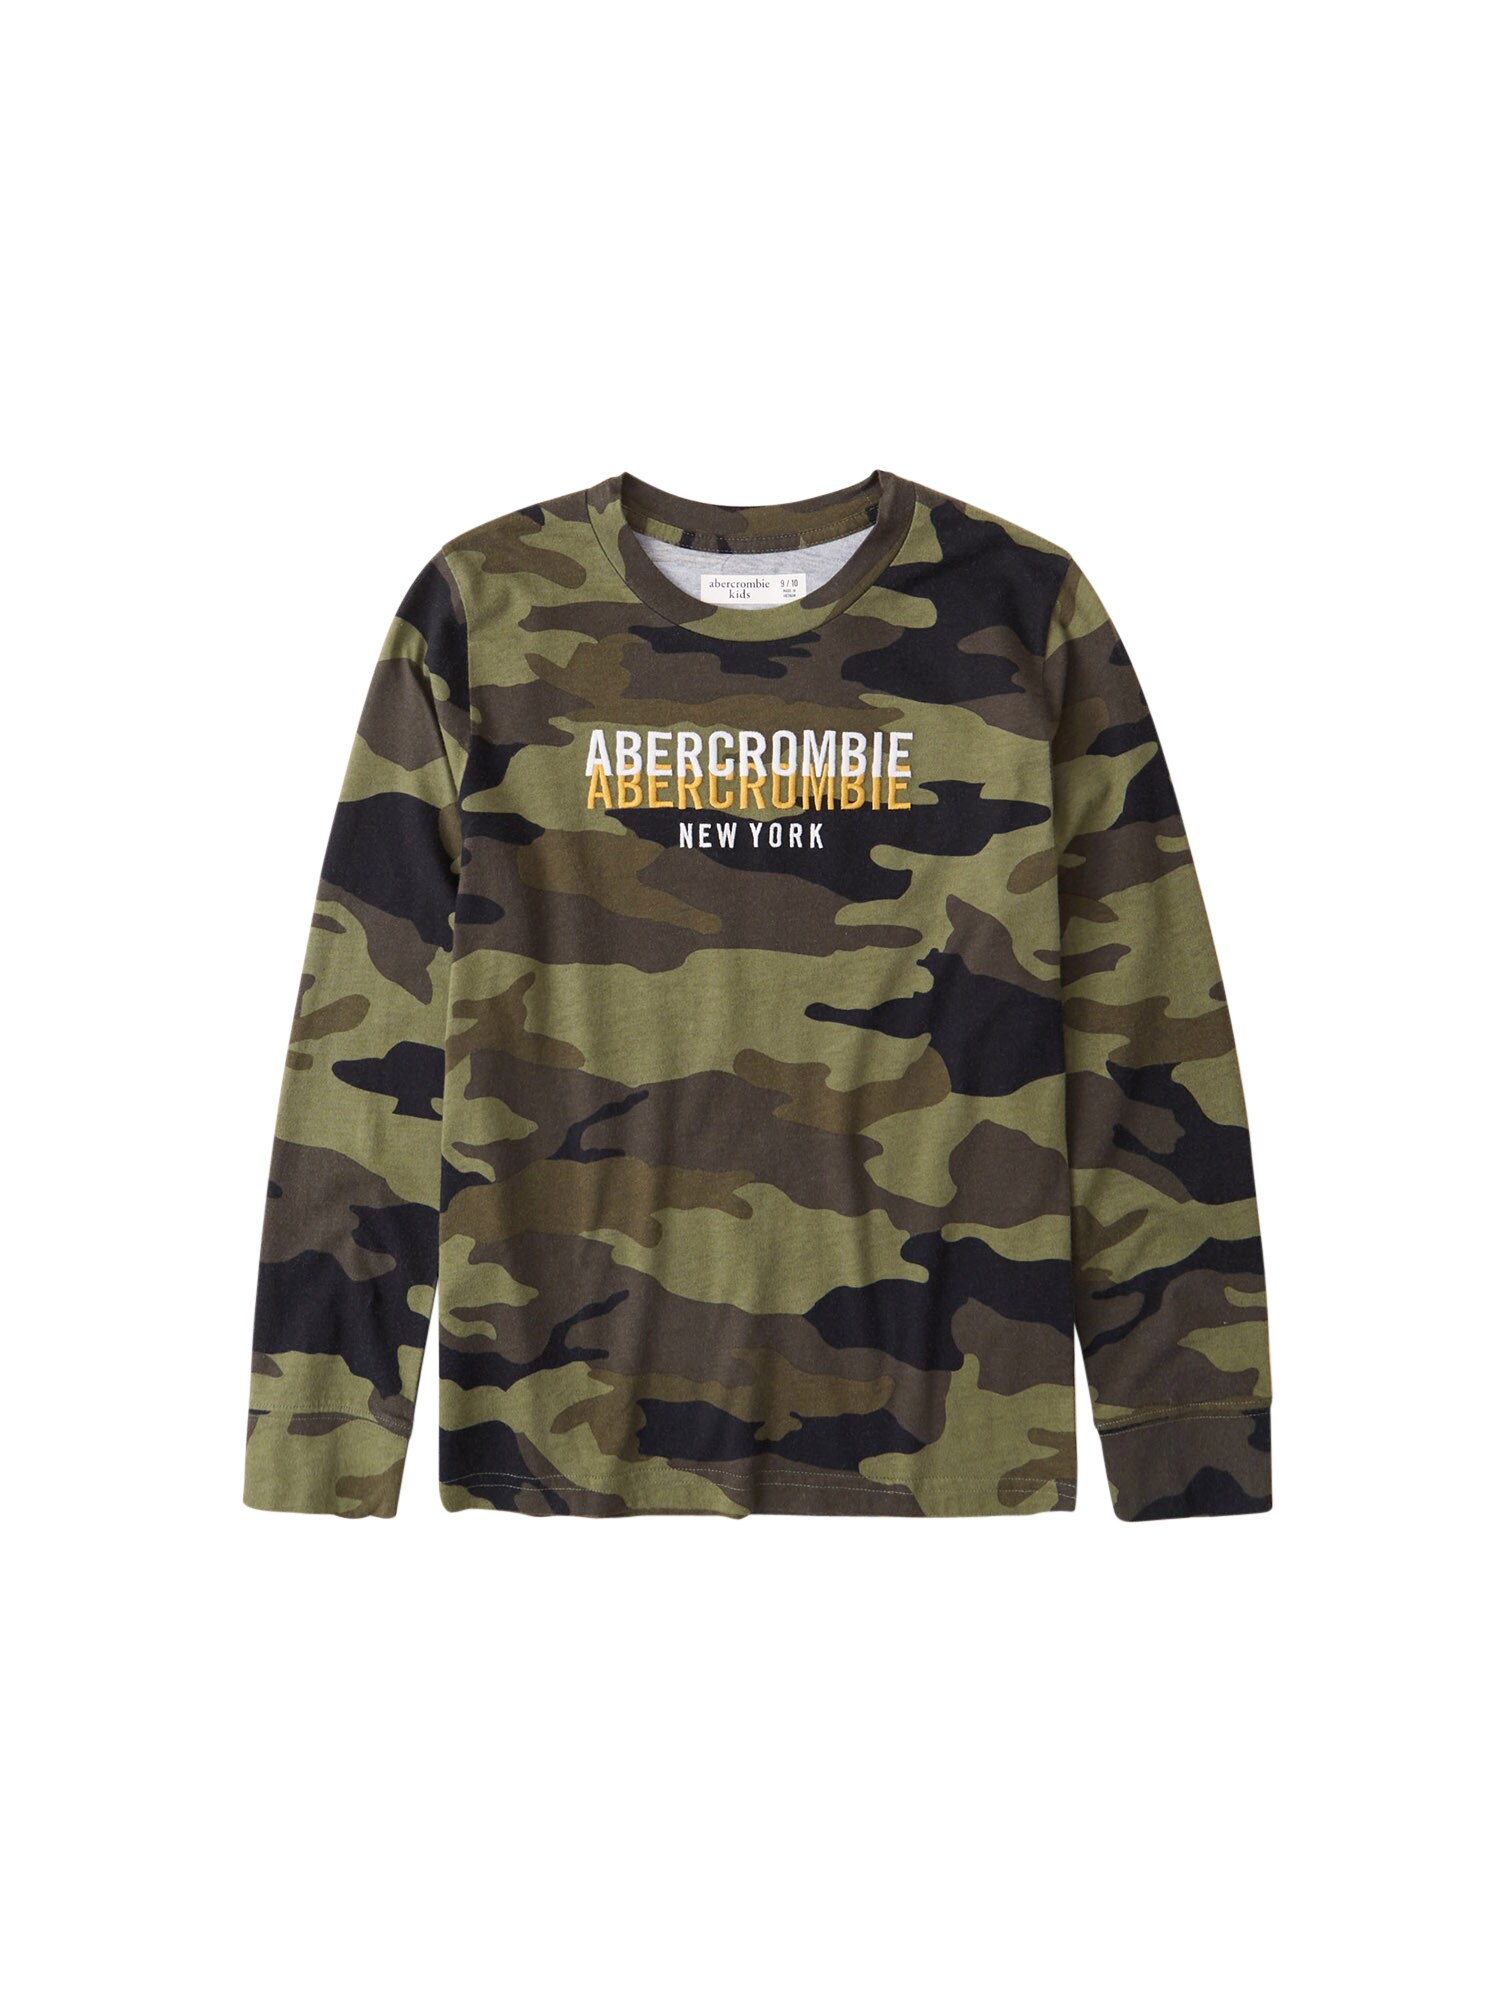 Abercrombie & Fitch Marškinėliai  tamsiai žalia / ruda / kaštoninė spalva / alyvuogių spalva / balta